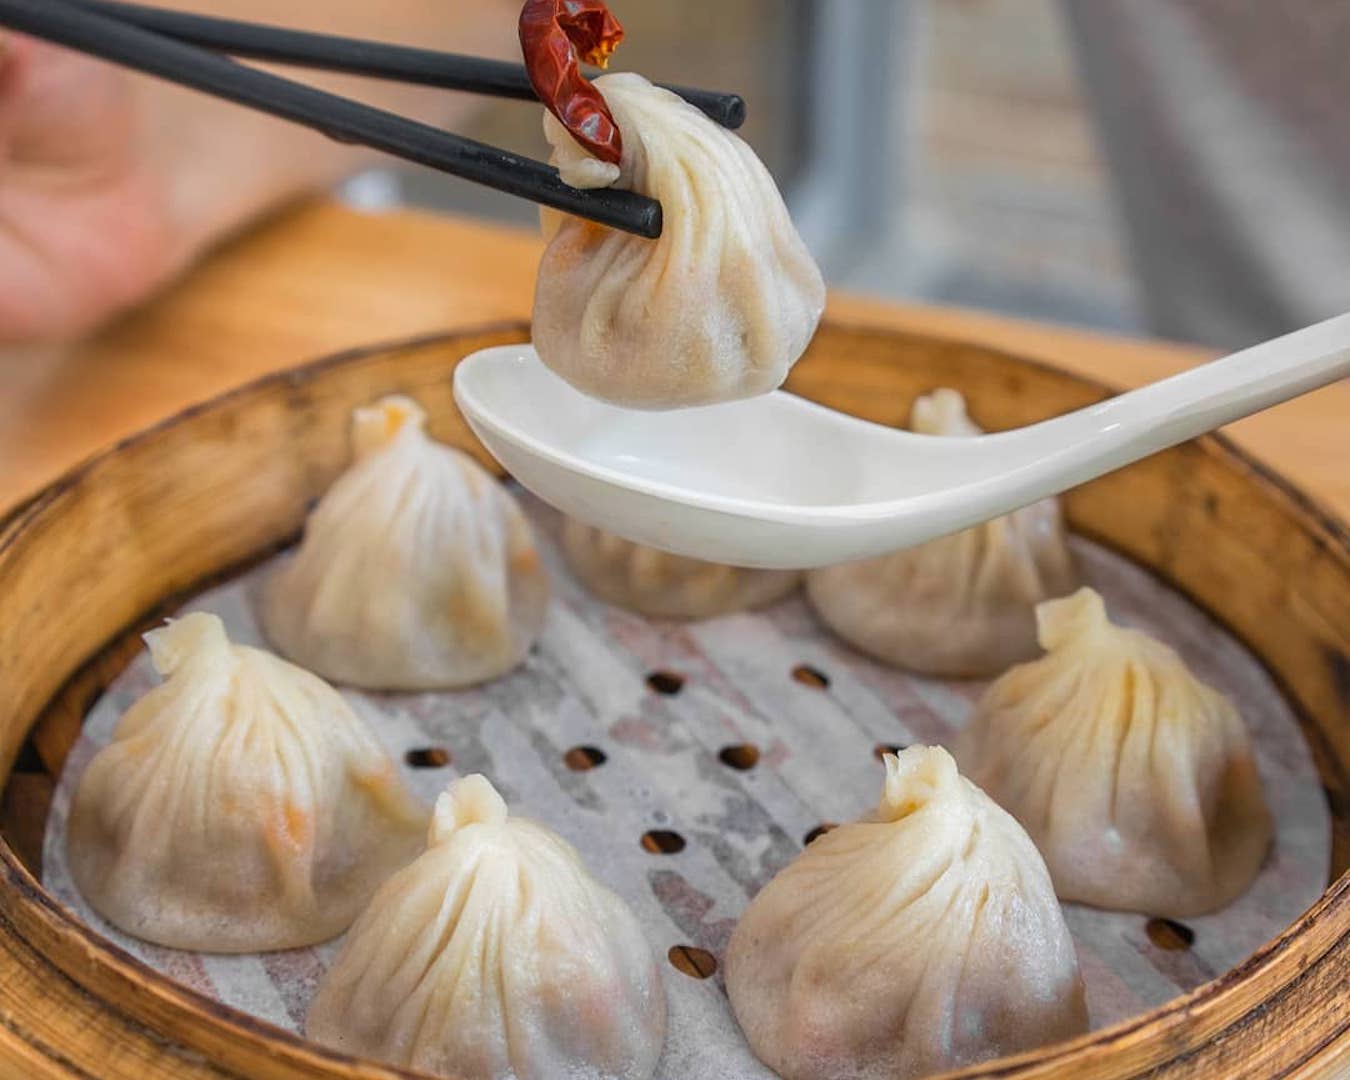 Dumplings at Juicy Bao Bao